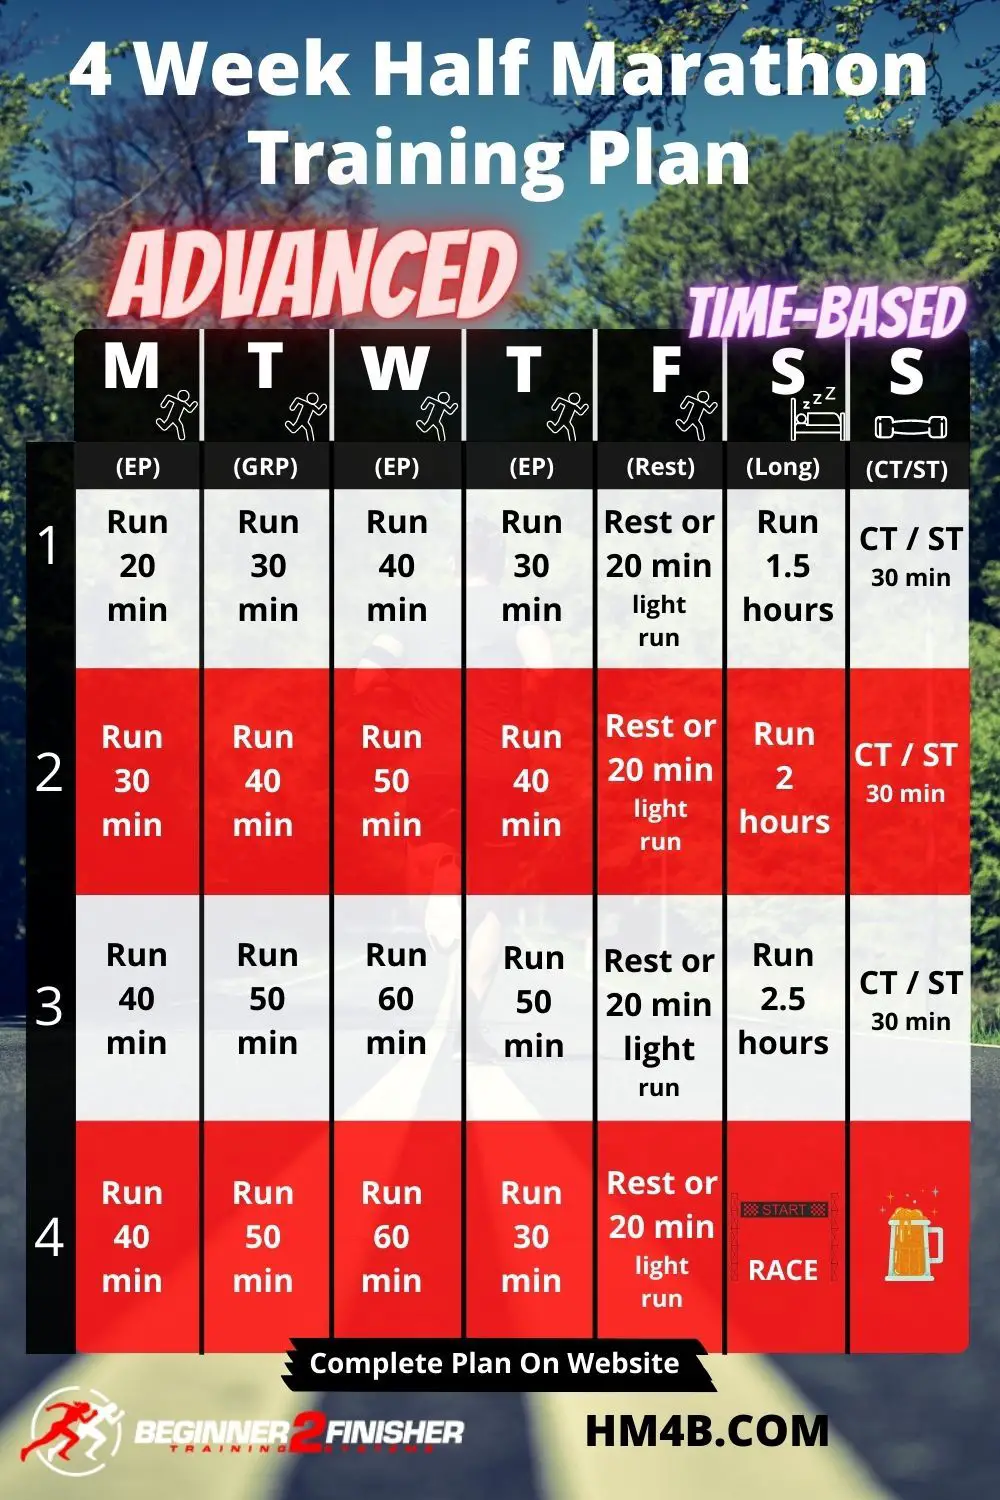 4 Week Half Marathon Training Schedule - Advanced - Time Based